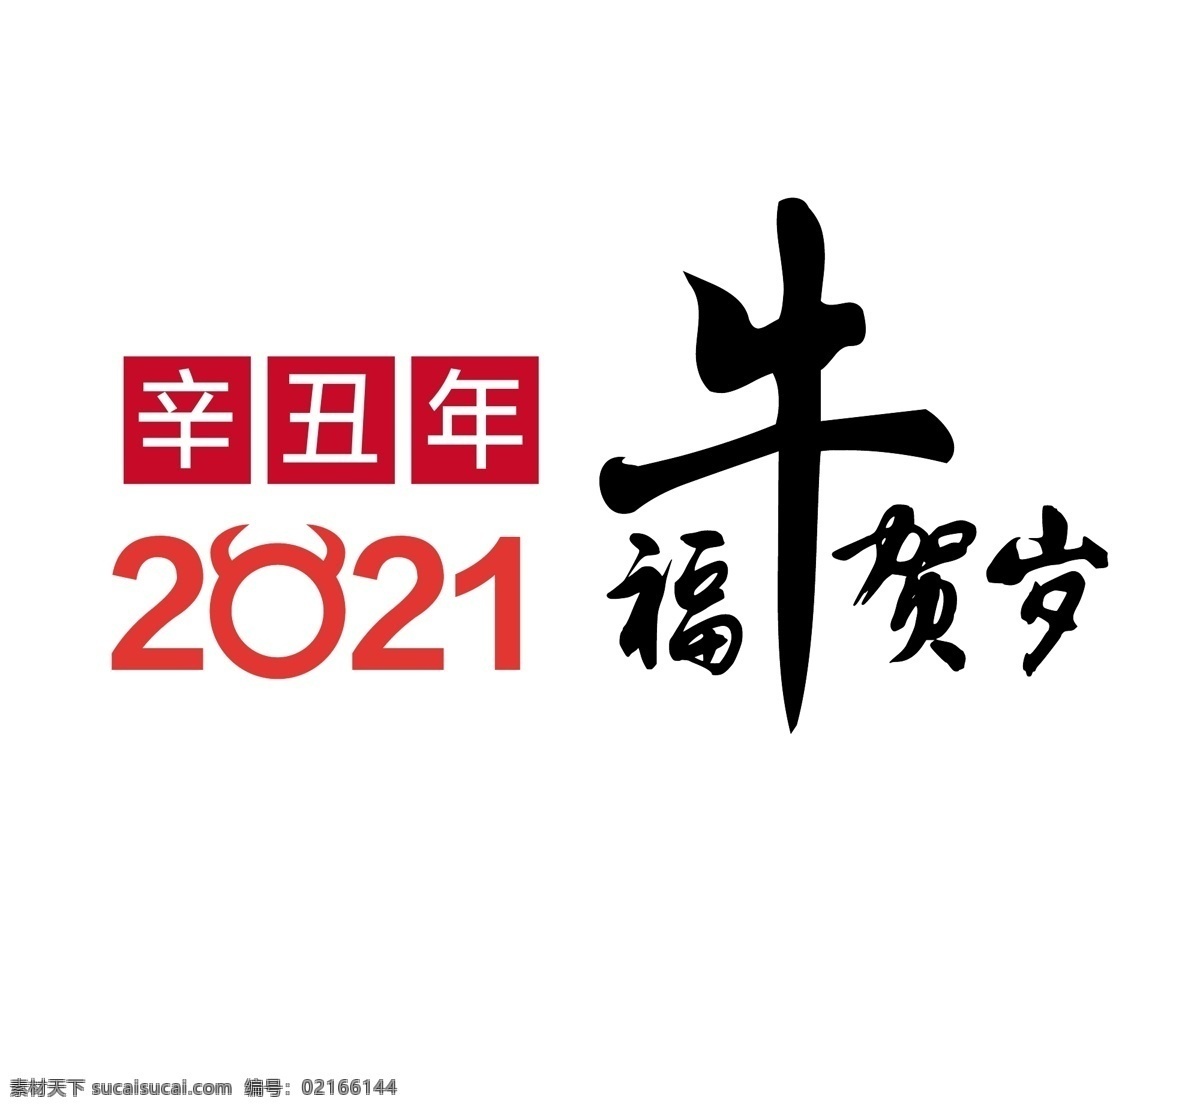 福牛贺岁图片 福牛贺岁 牛年 牛 2021年 2021 字体设计 字体 年 日历 台历 新年海报